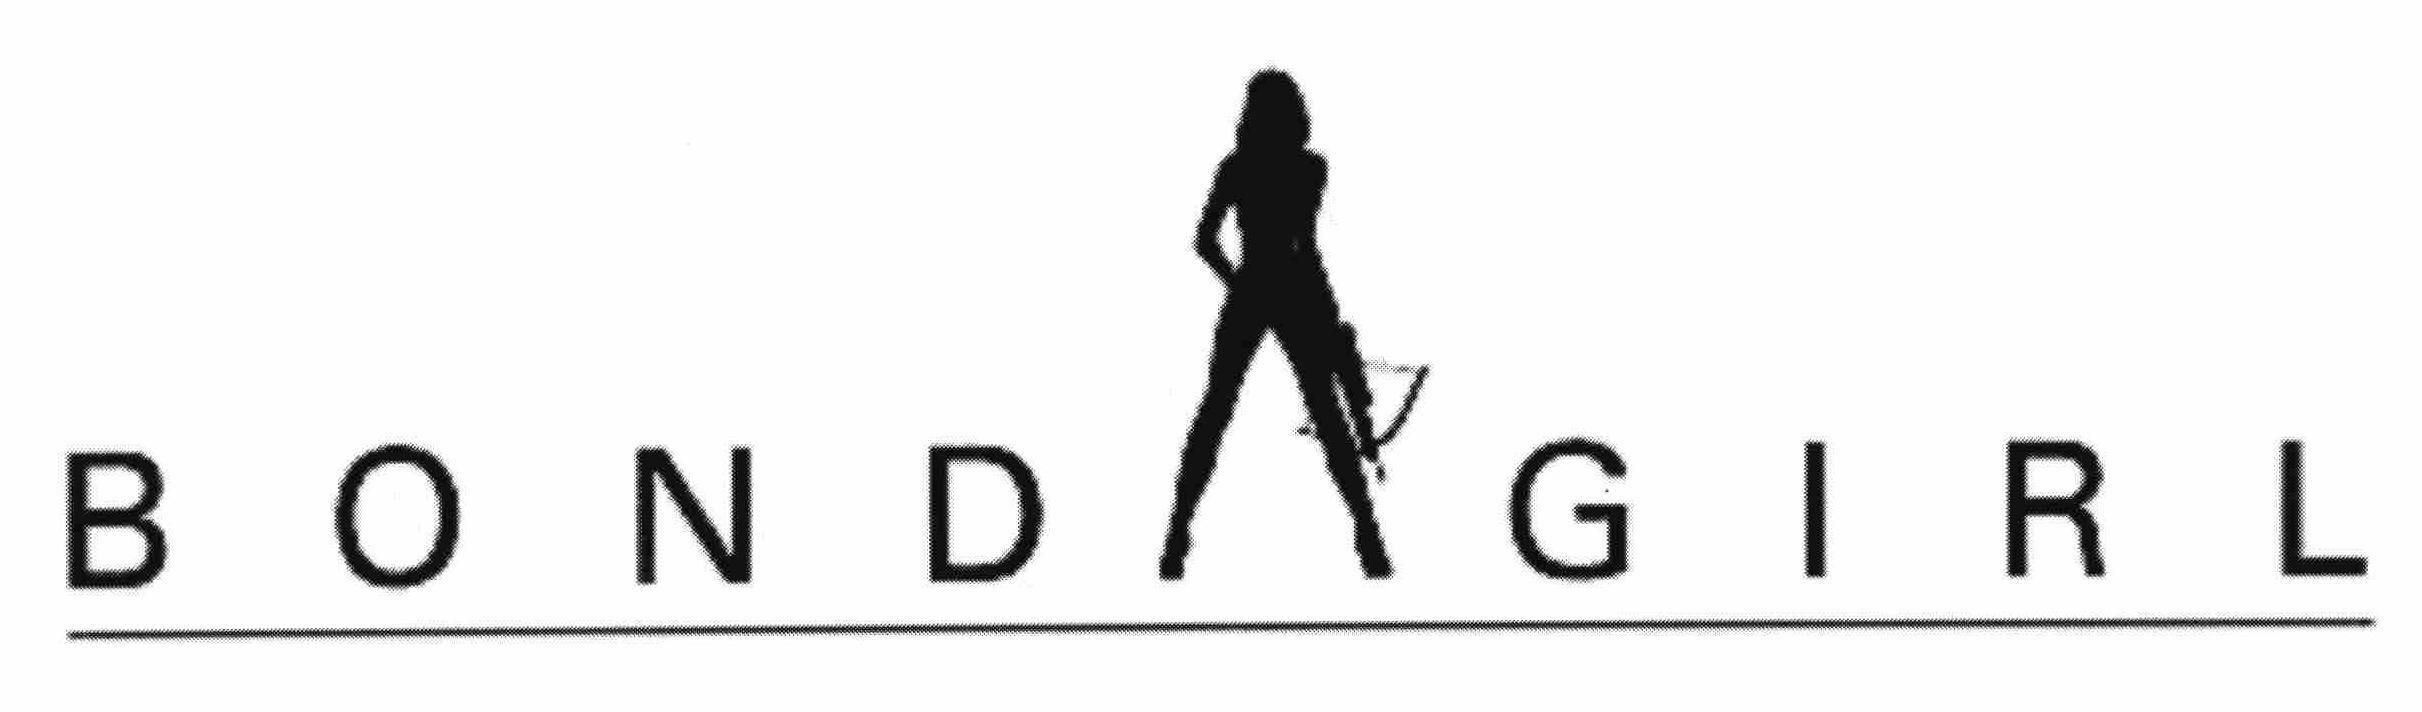 Trademark Logo BOND GIRL